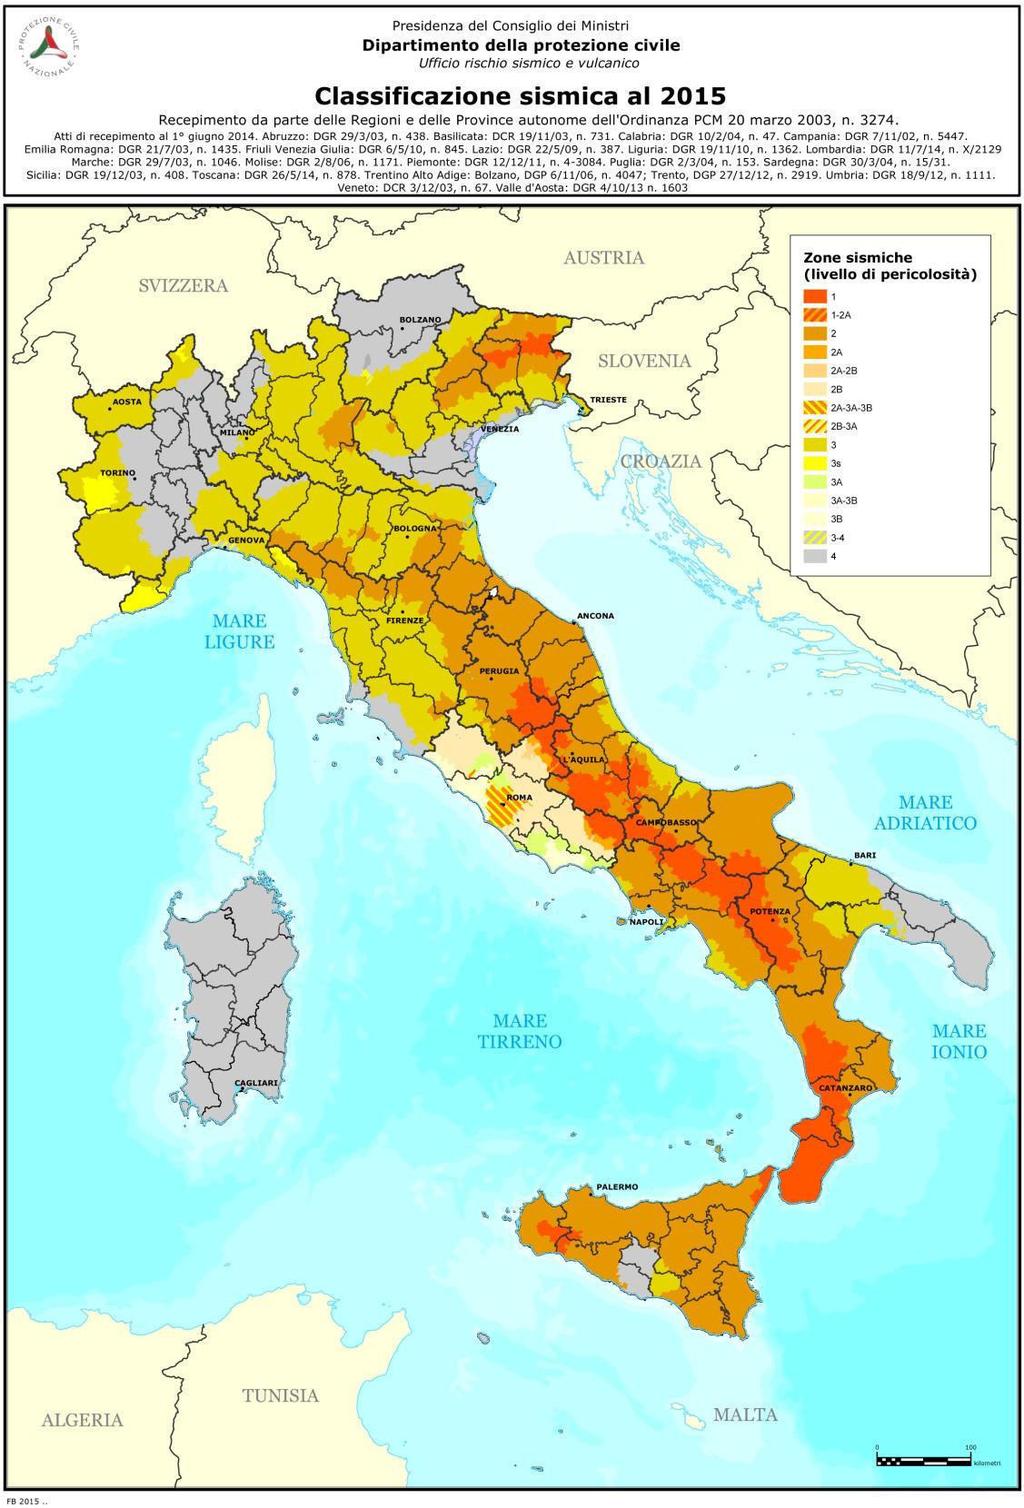 Rischio Sismico La classificazione sismica ufficiale include il Comune di Fiumara tra i centri di I categoria, è infatti classificato come Zona 1 di pericolosità sismica.